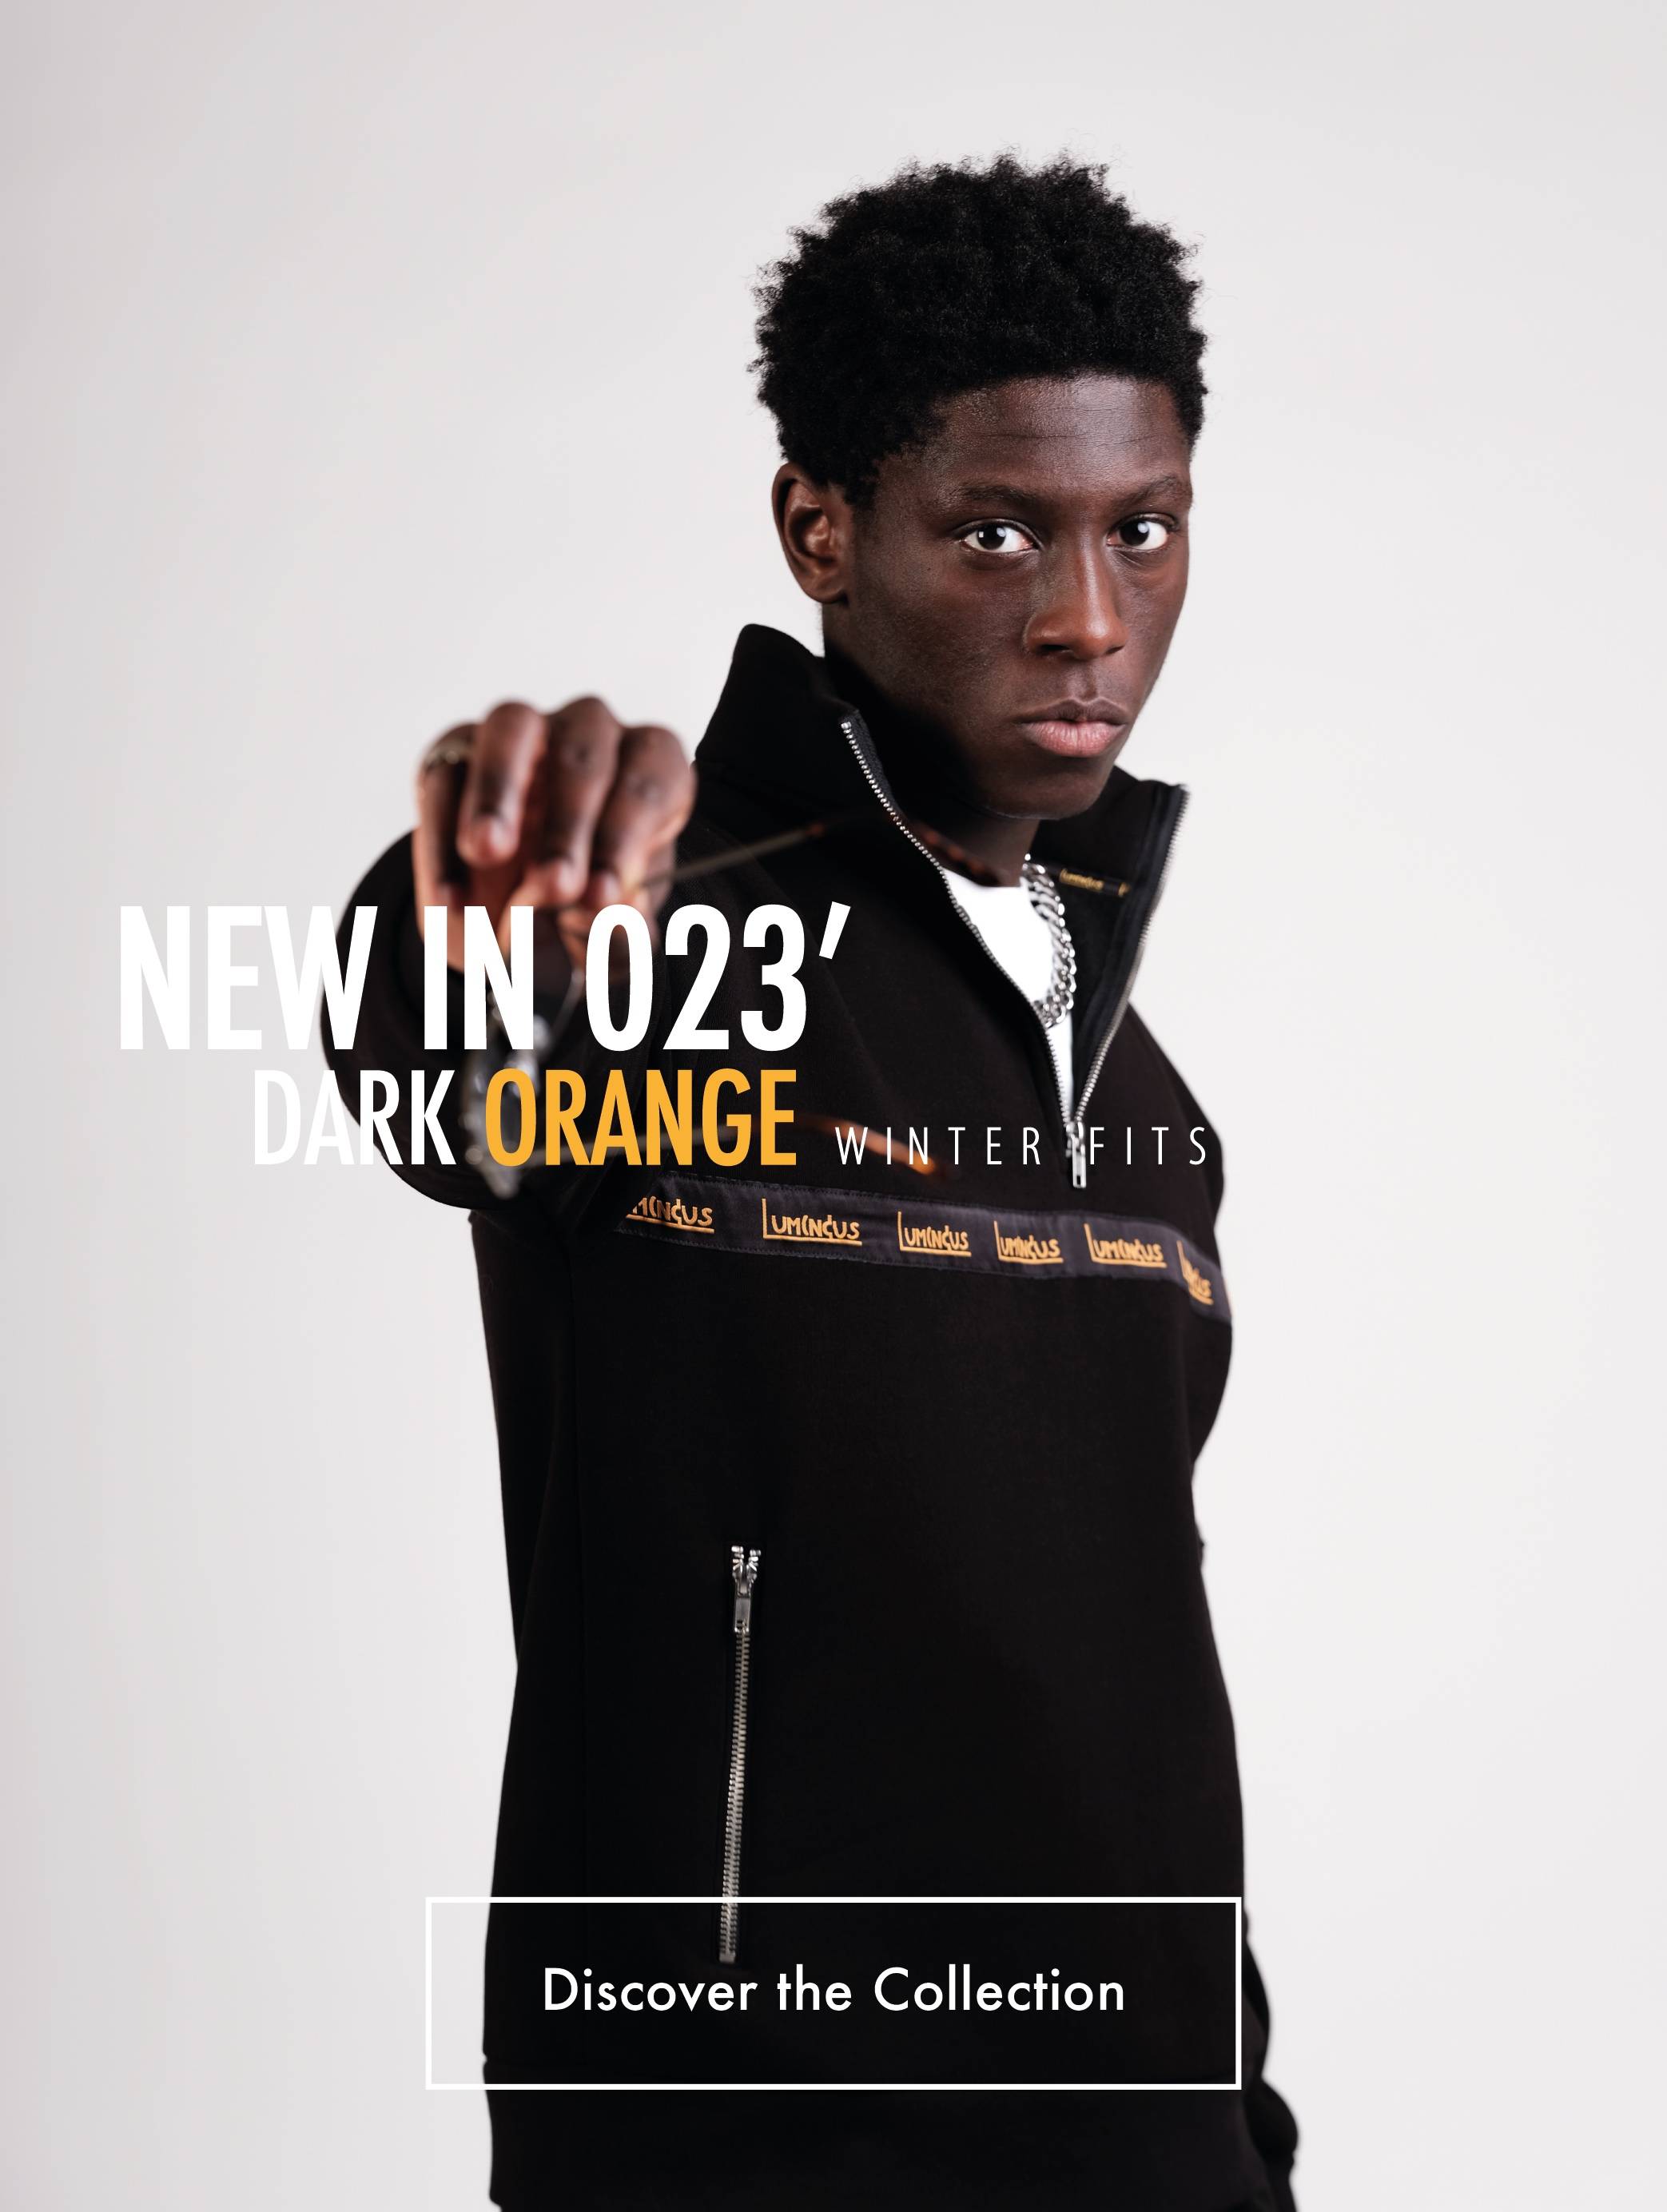 New in 023' - Dark Orange - Winter Fits